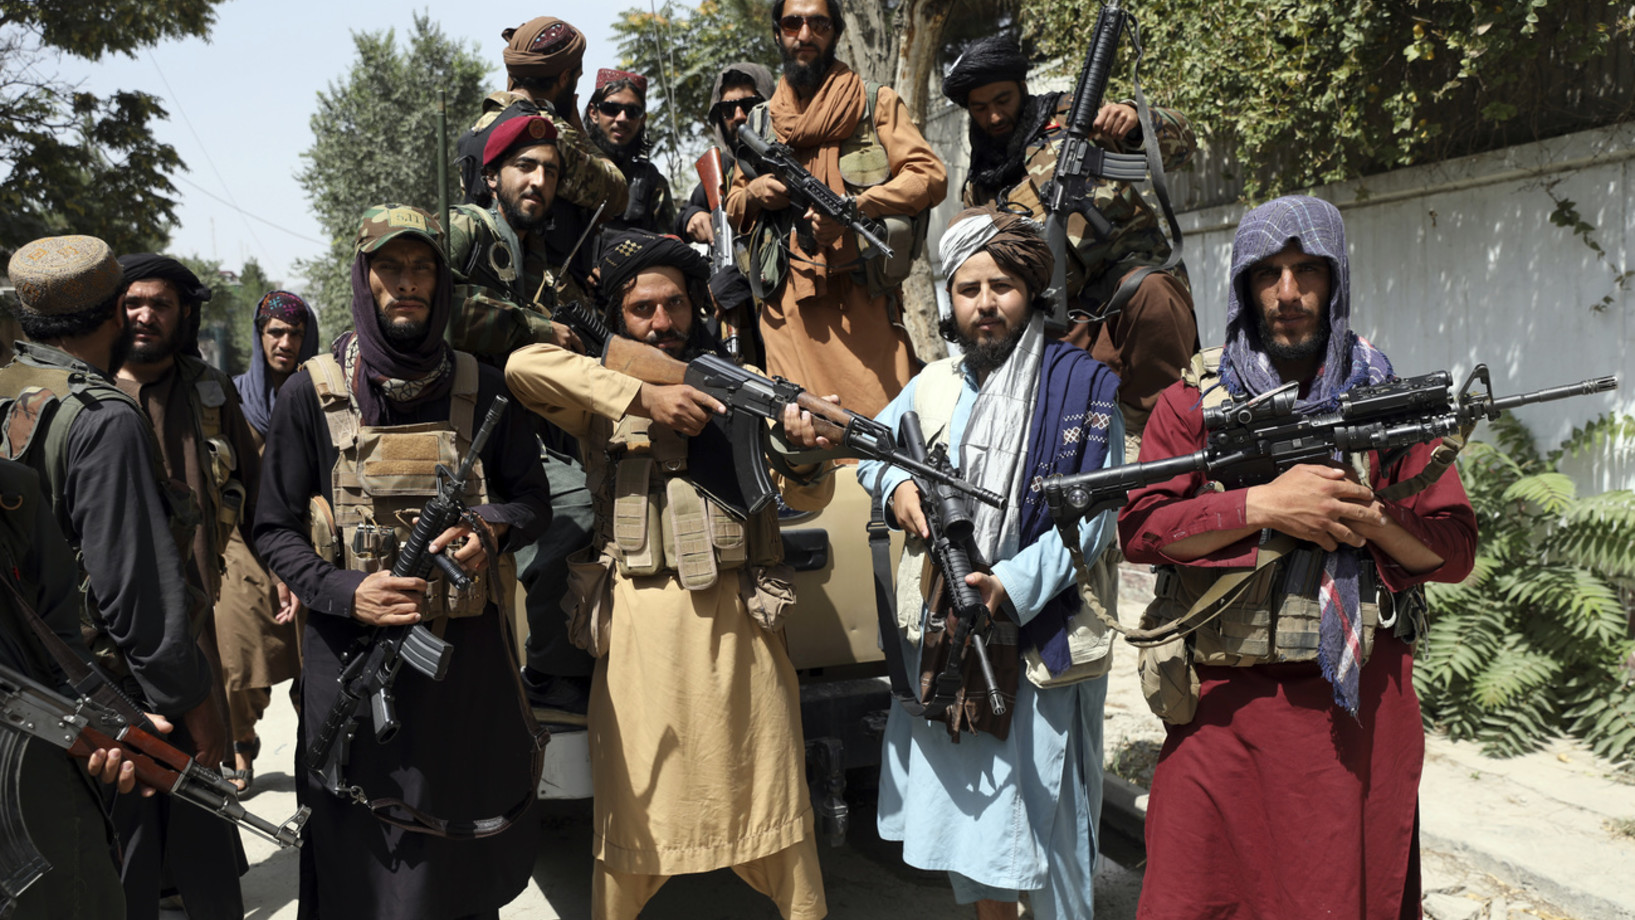 Talibankämpfer posieren am 19. August 2021 in Kabul für ein Foto. (Keystone/AP, Rahmat Gul)